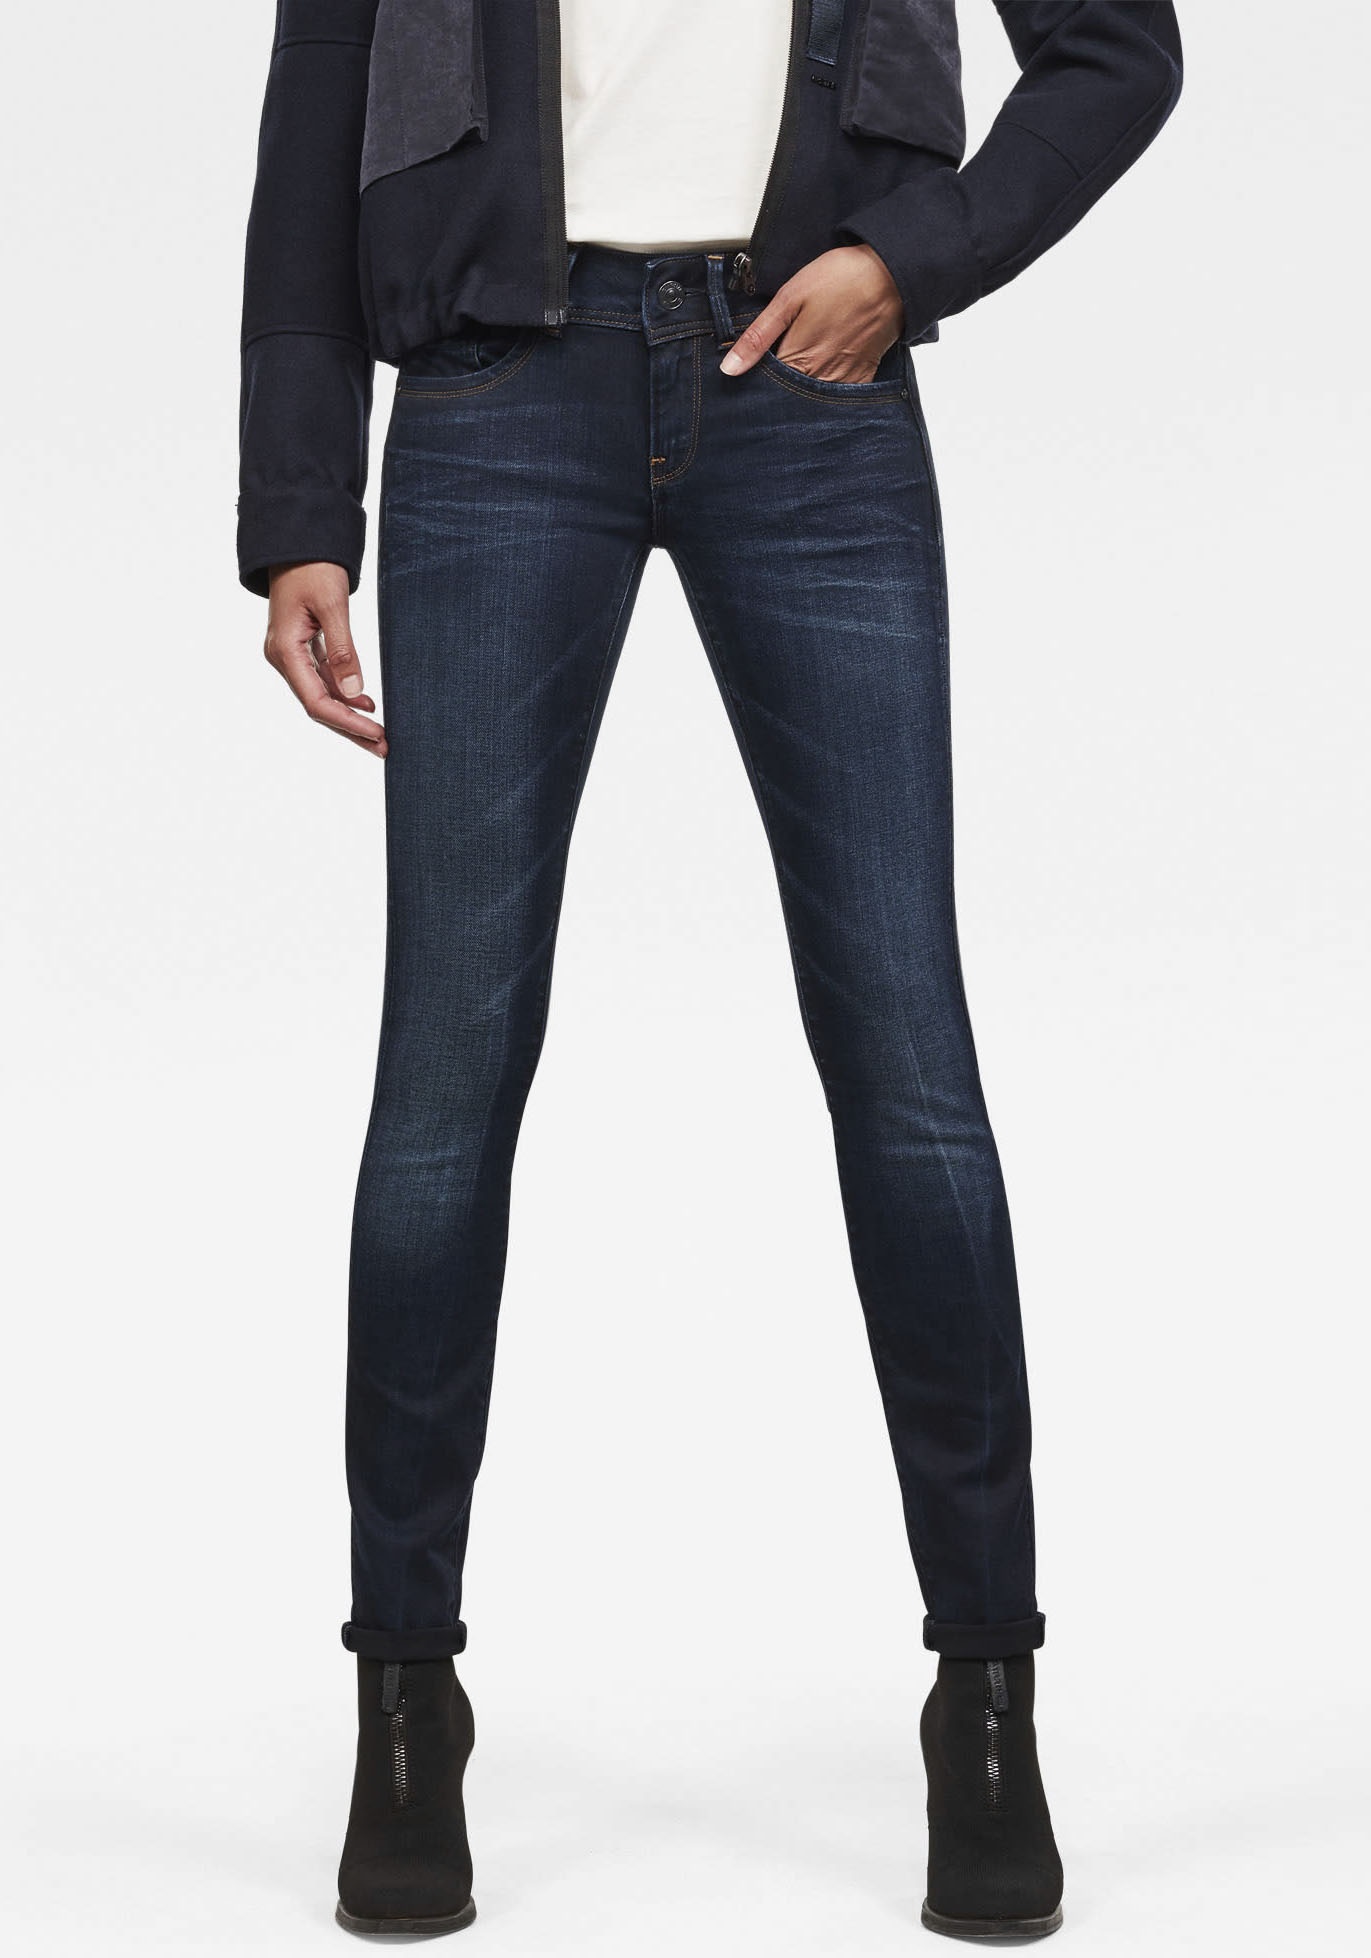 Skinny-fit-Jeans G-STAR RAW "Mid Waist Skinny" Gr. 34, Länge 32, blau (medium aged) Damen Jeans Röhrenjeans